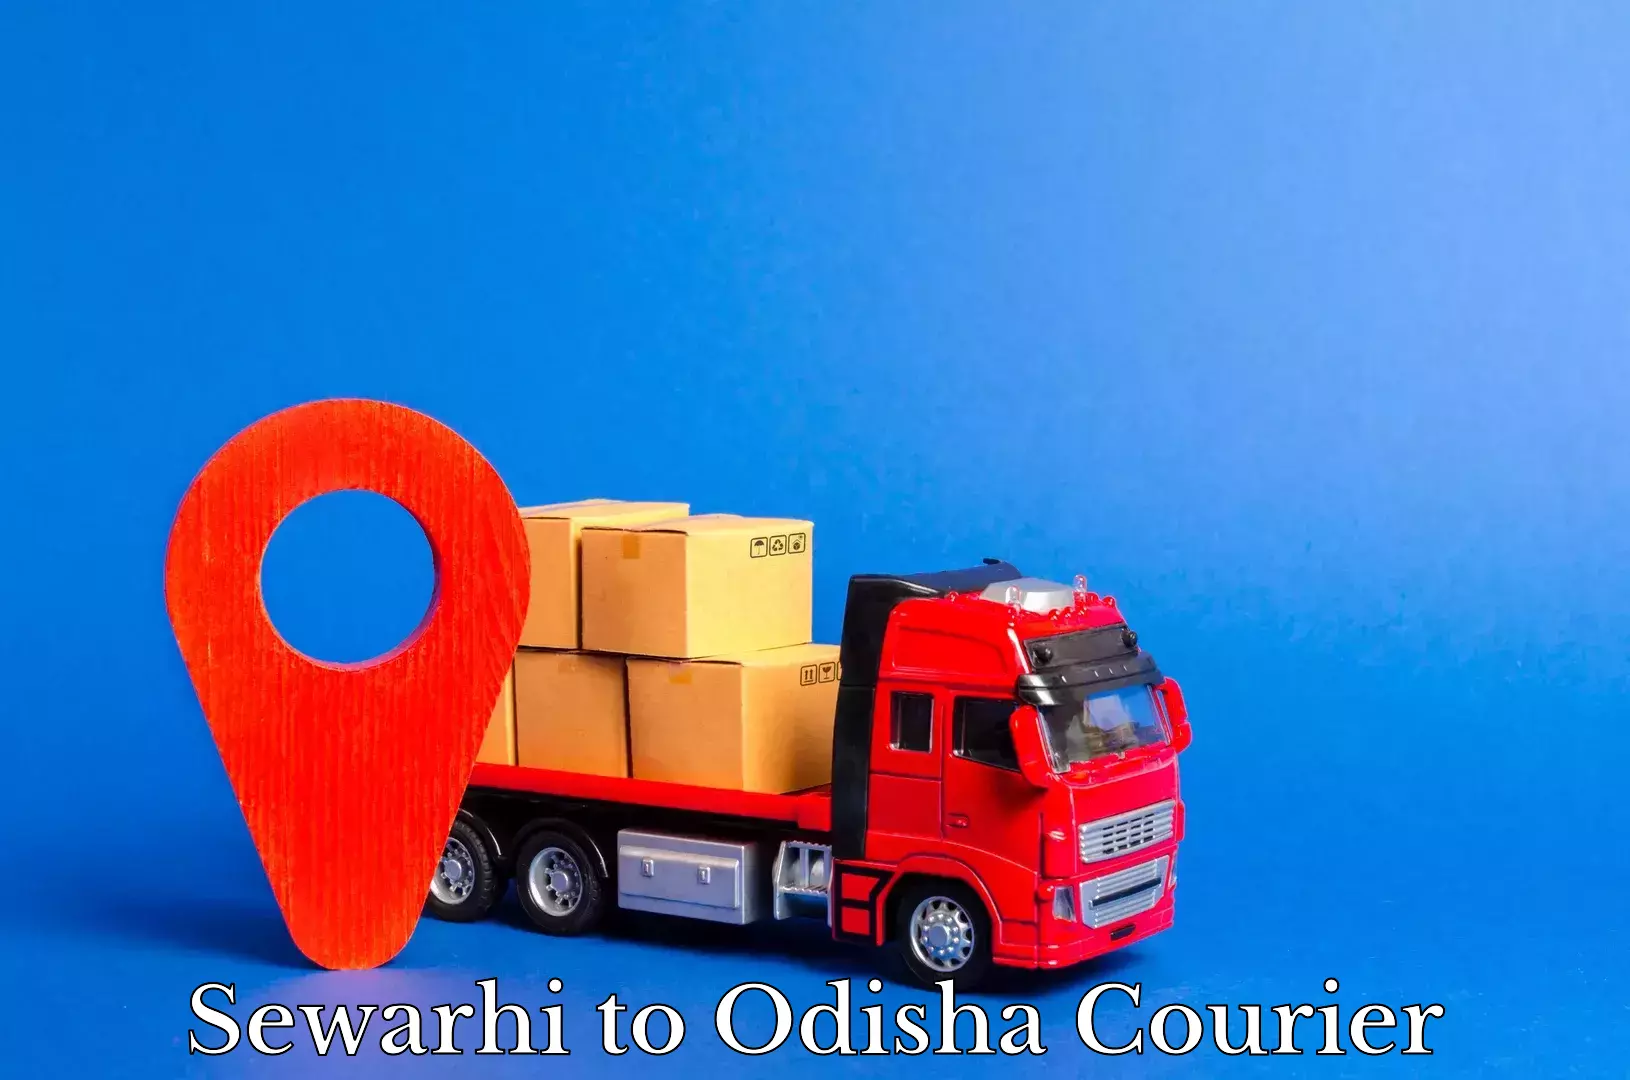 Global courier networks Sewarhi to Odisha